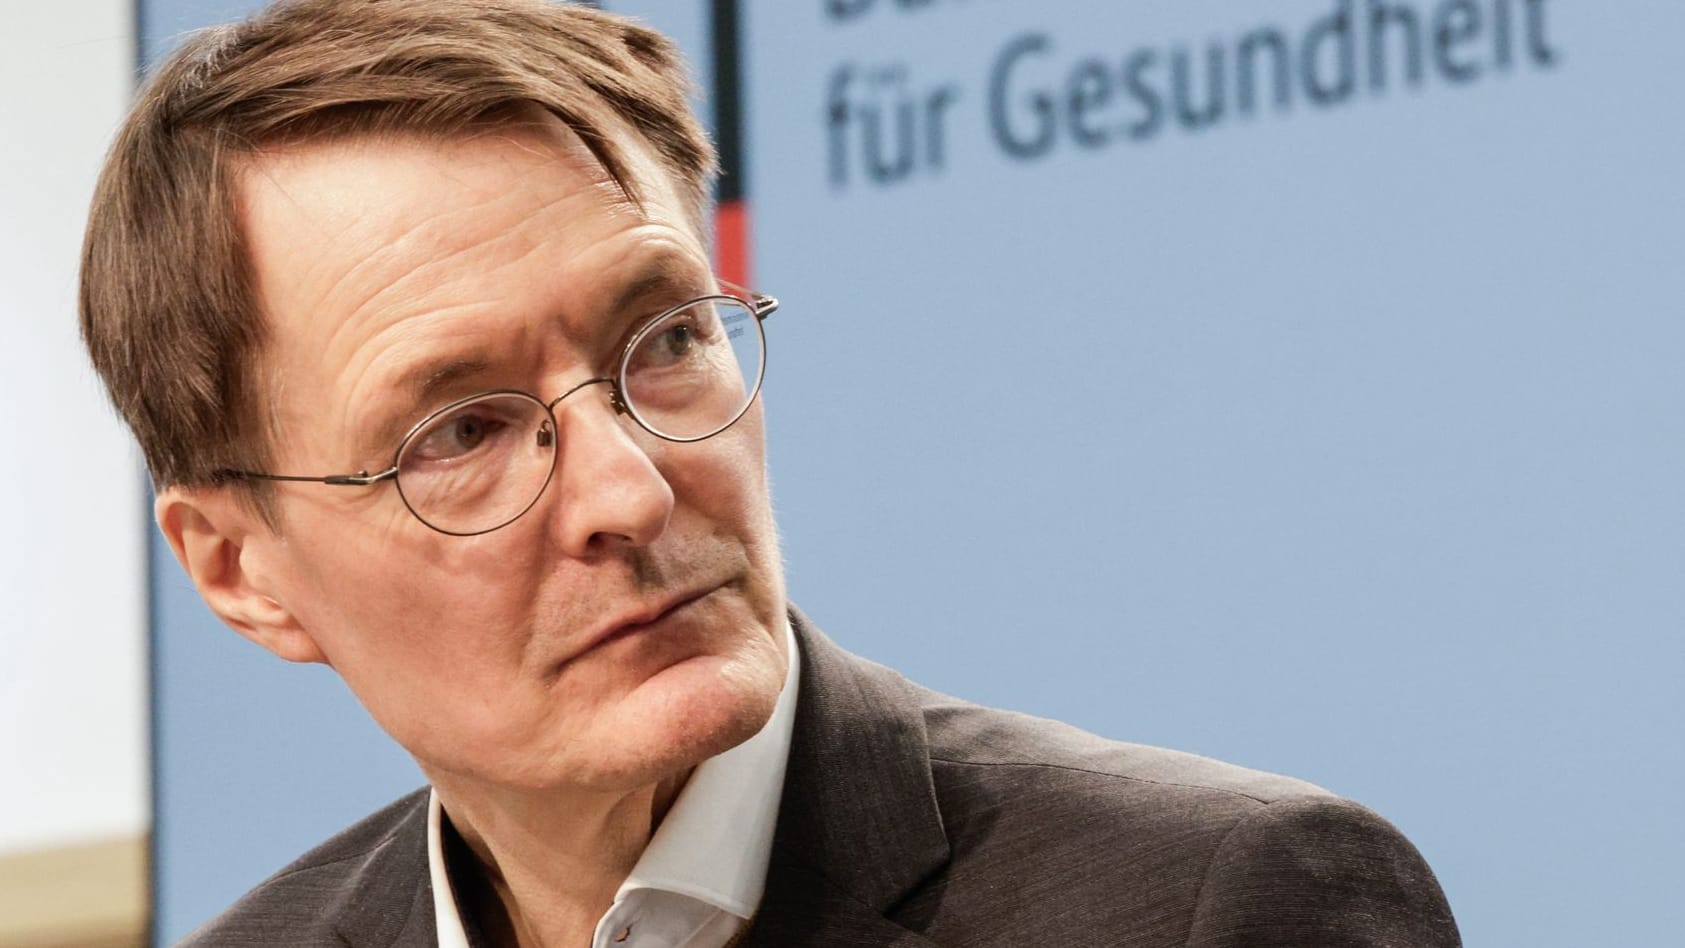 Ärztemangel in Deutschland: Karl Lauterbach warnt, die Branche klagt